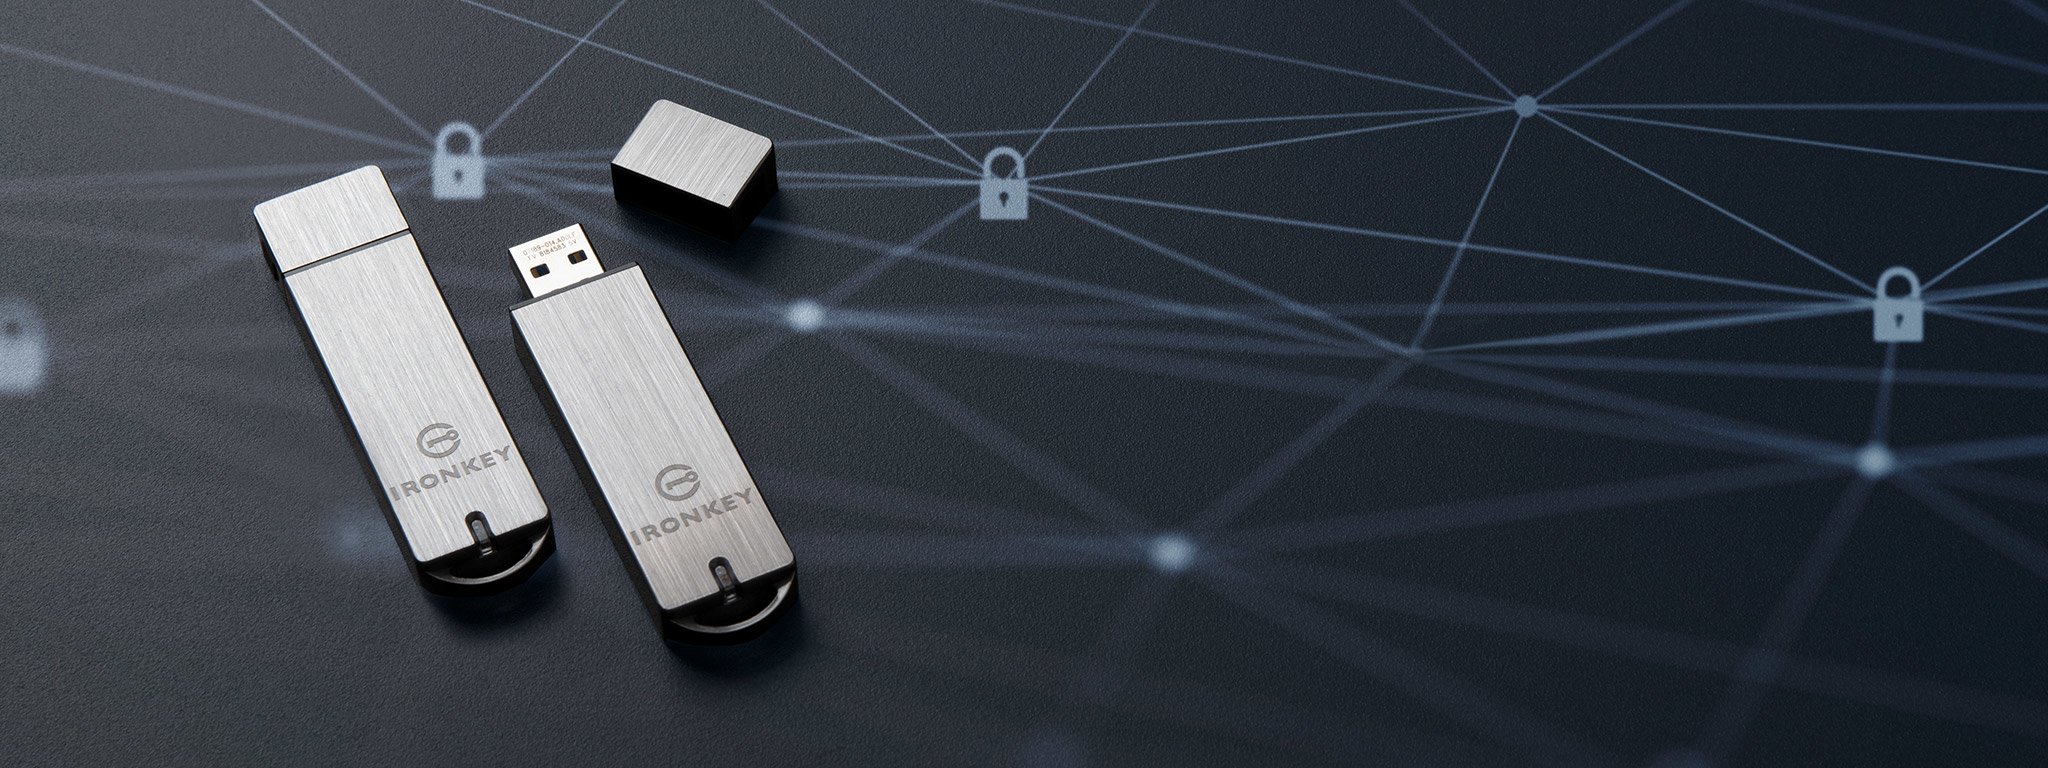 两个 IronKey S1000 Encrypted USB 闪存盘位于黑色平面，锁定图标图形为白色